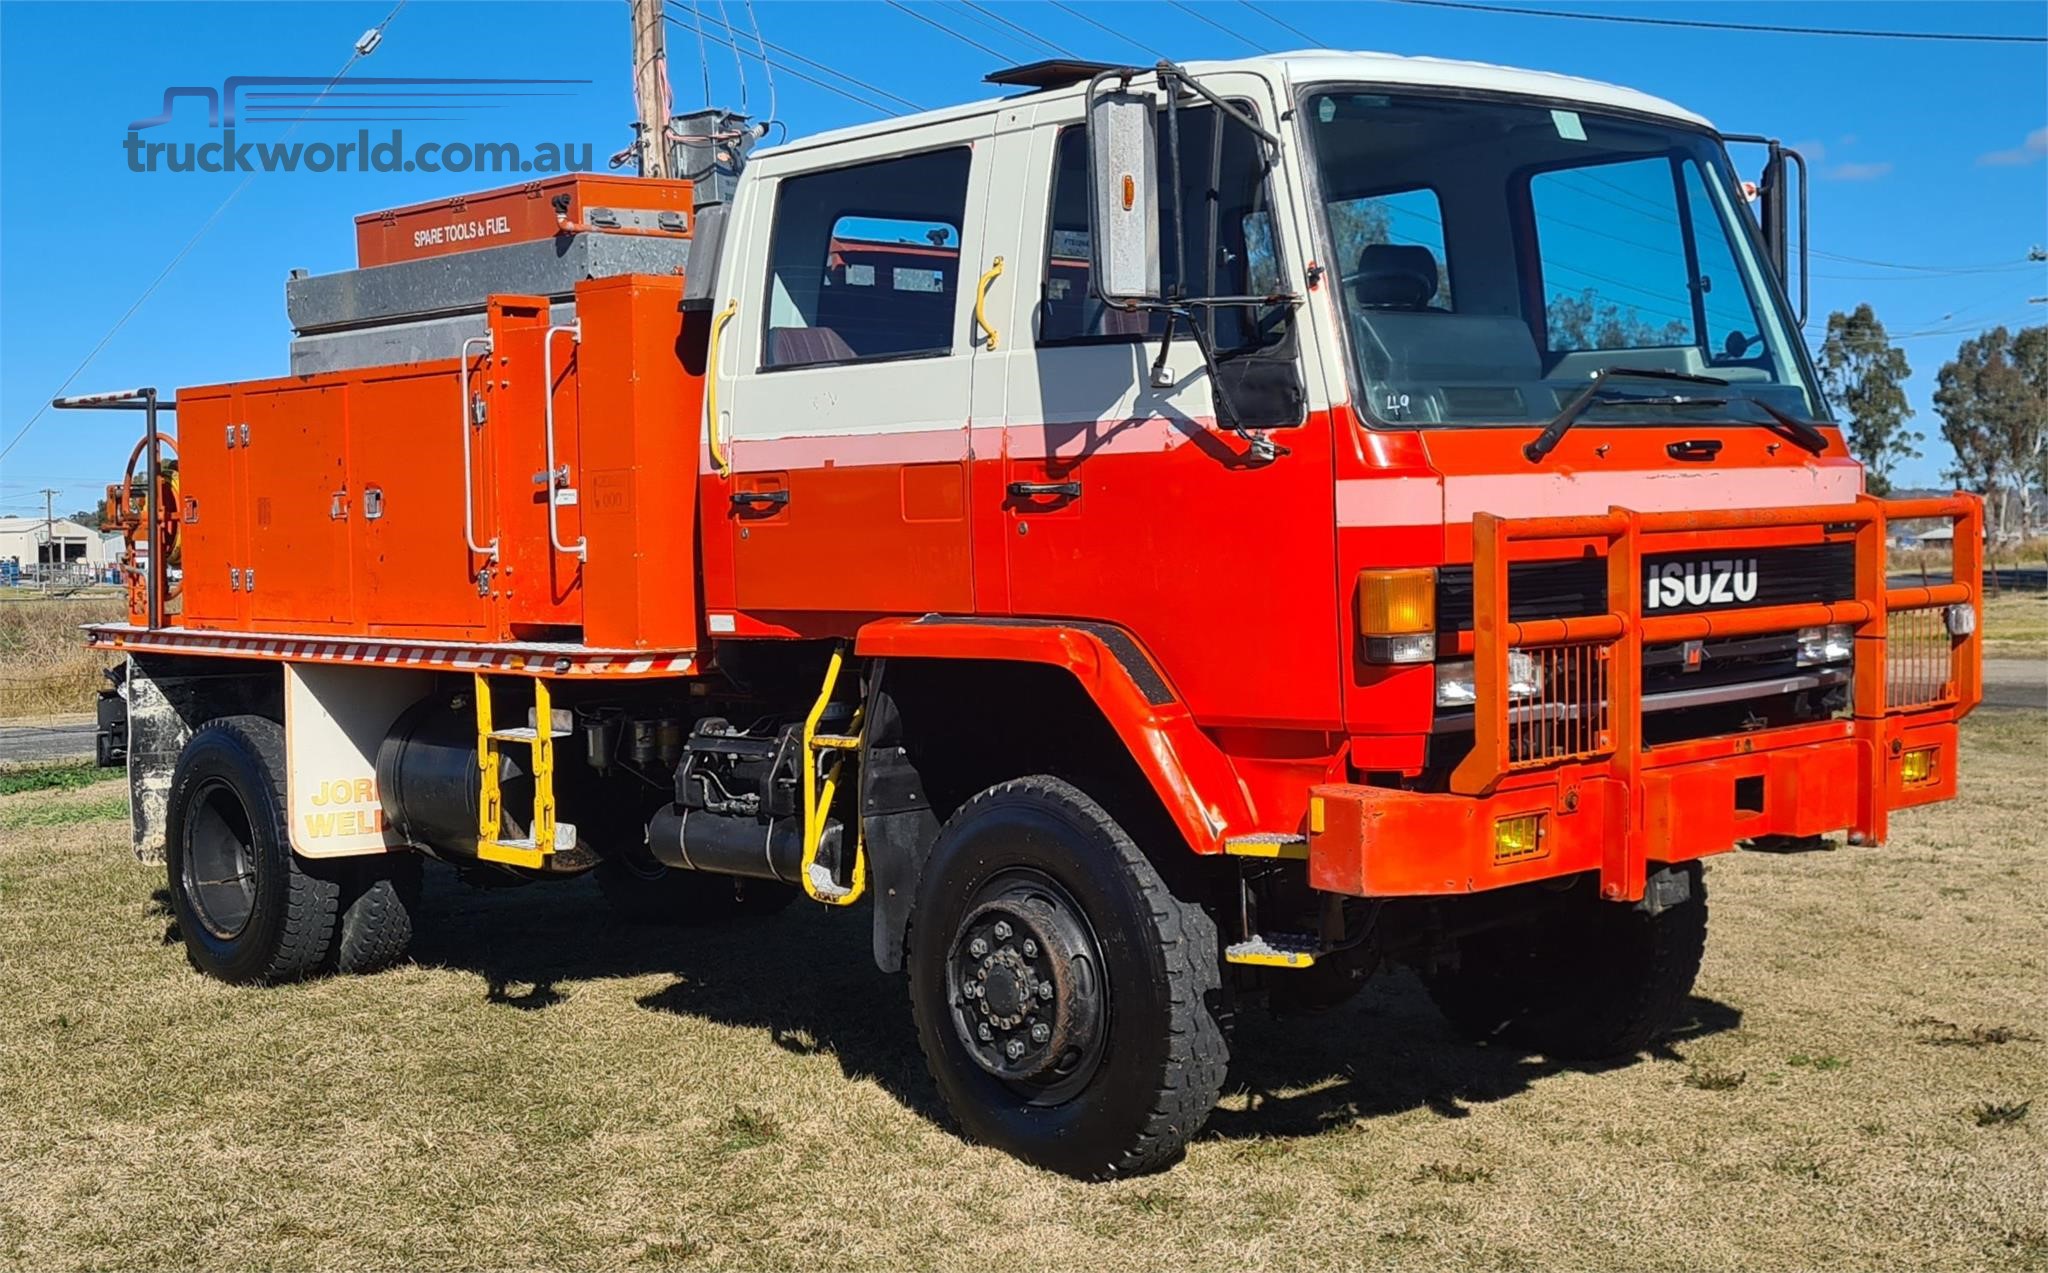 1988 Isuzu FTS Fire Truck truck for sale Grand Motor Group ...